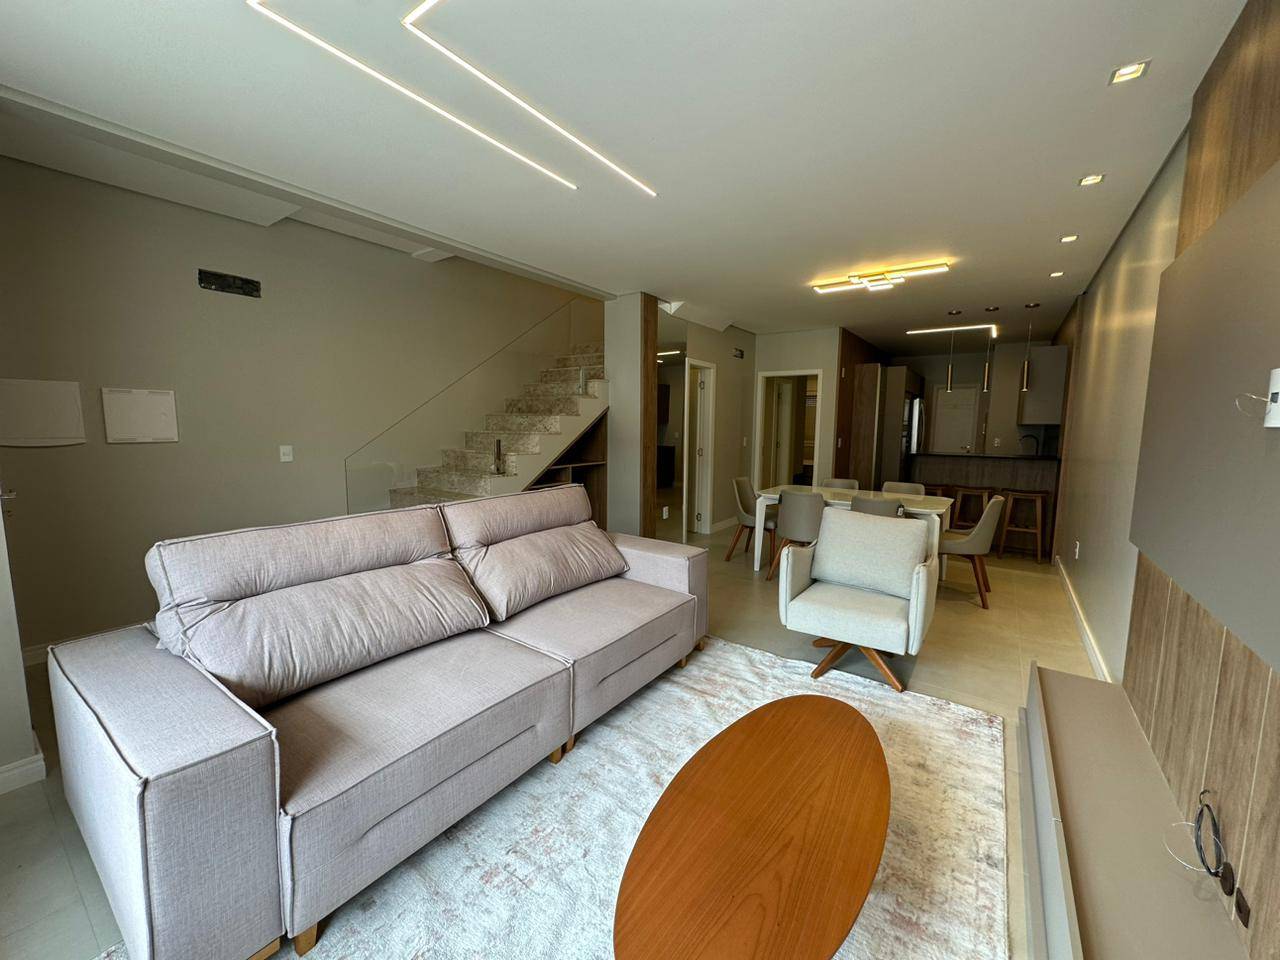 Casa em Condomínio 4 dormitórios para venda, Condomínio Murano - Zona Nova em Capão da Canoa | Ref.: 3238